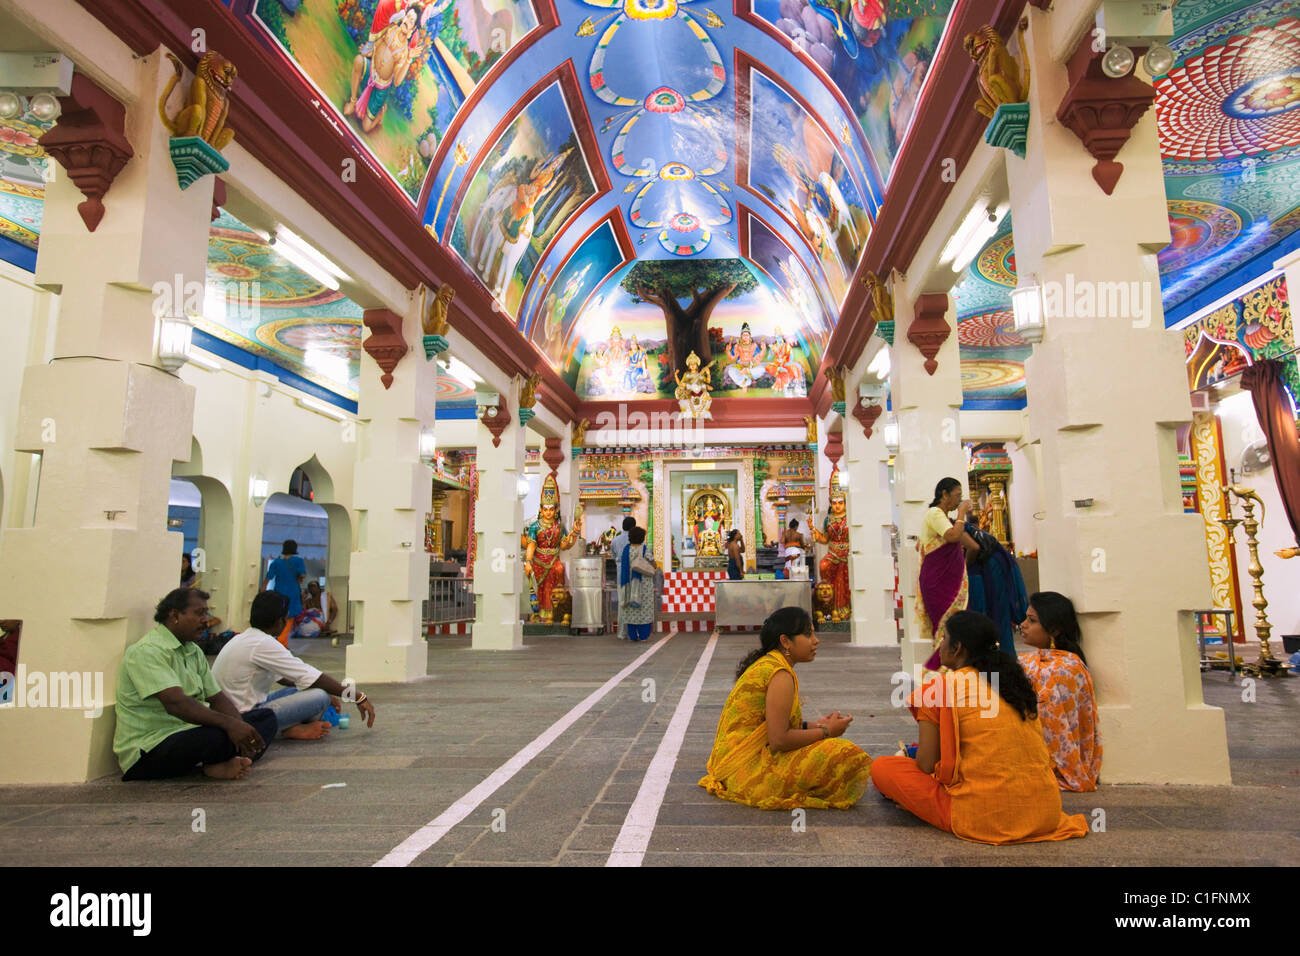 Colorido interior del templo hindú Sri Mariamman. Chinatown, Singapur Foto de stock